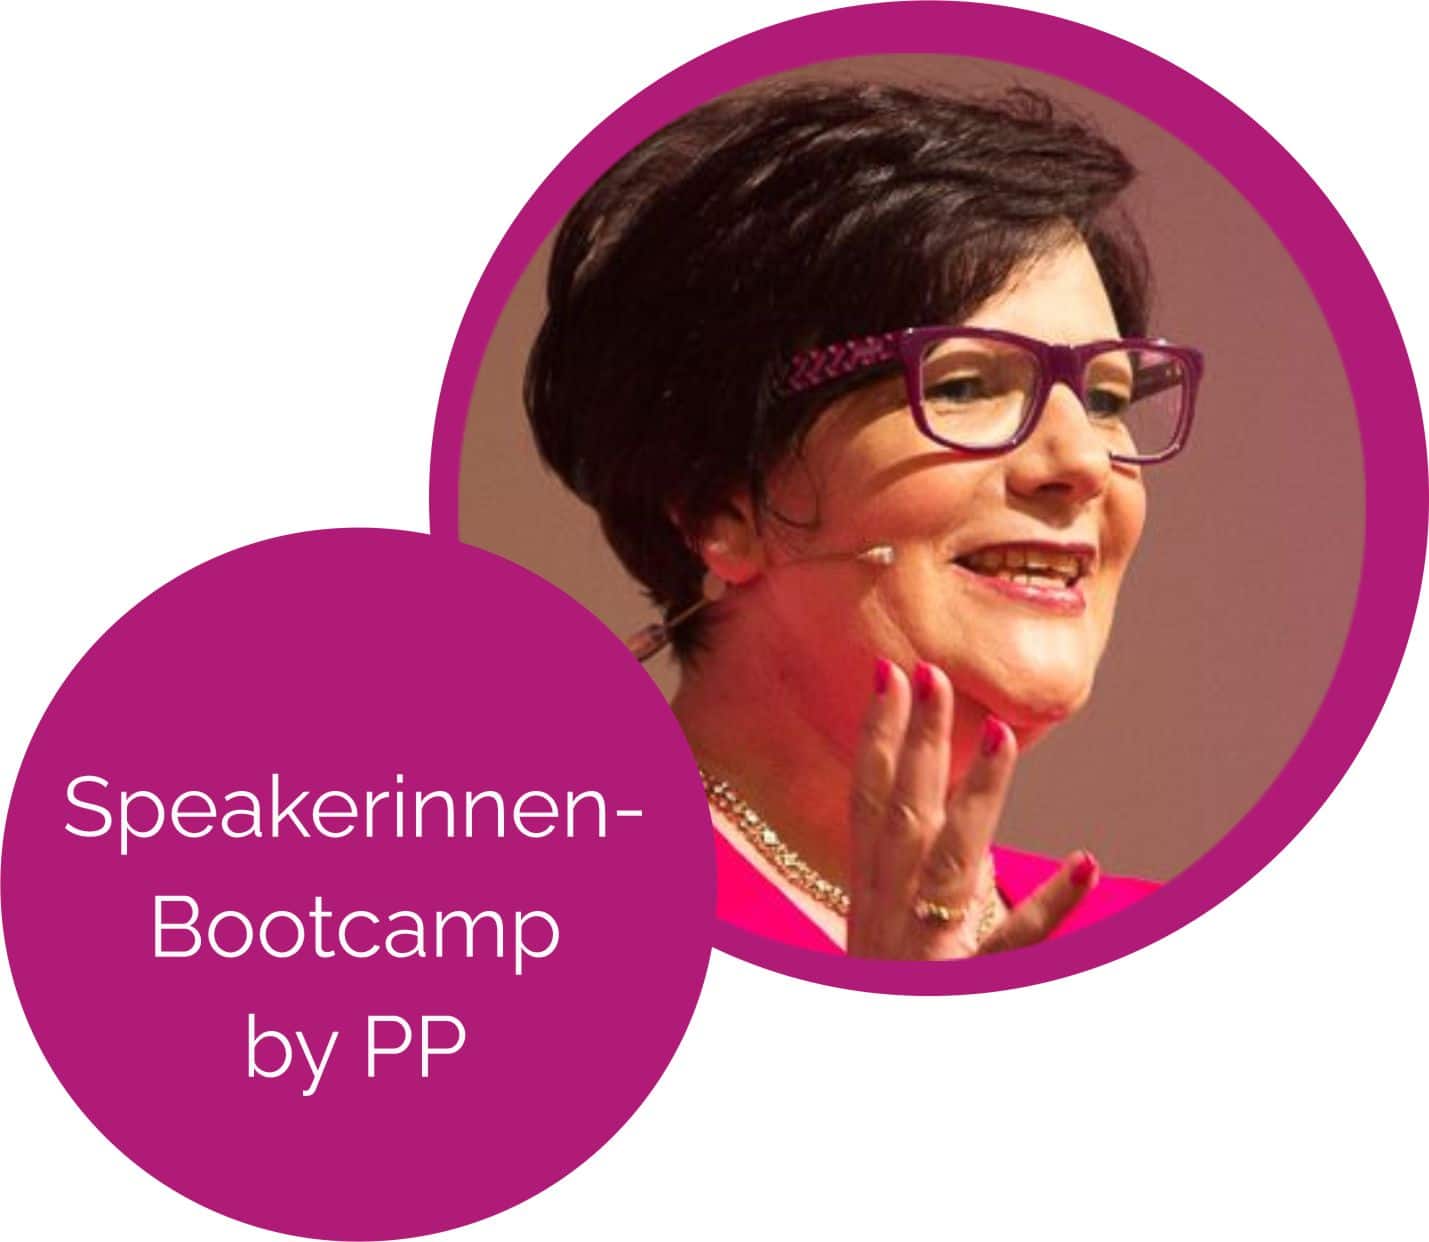 Speakerinnen-
Bootcamp 
by PP